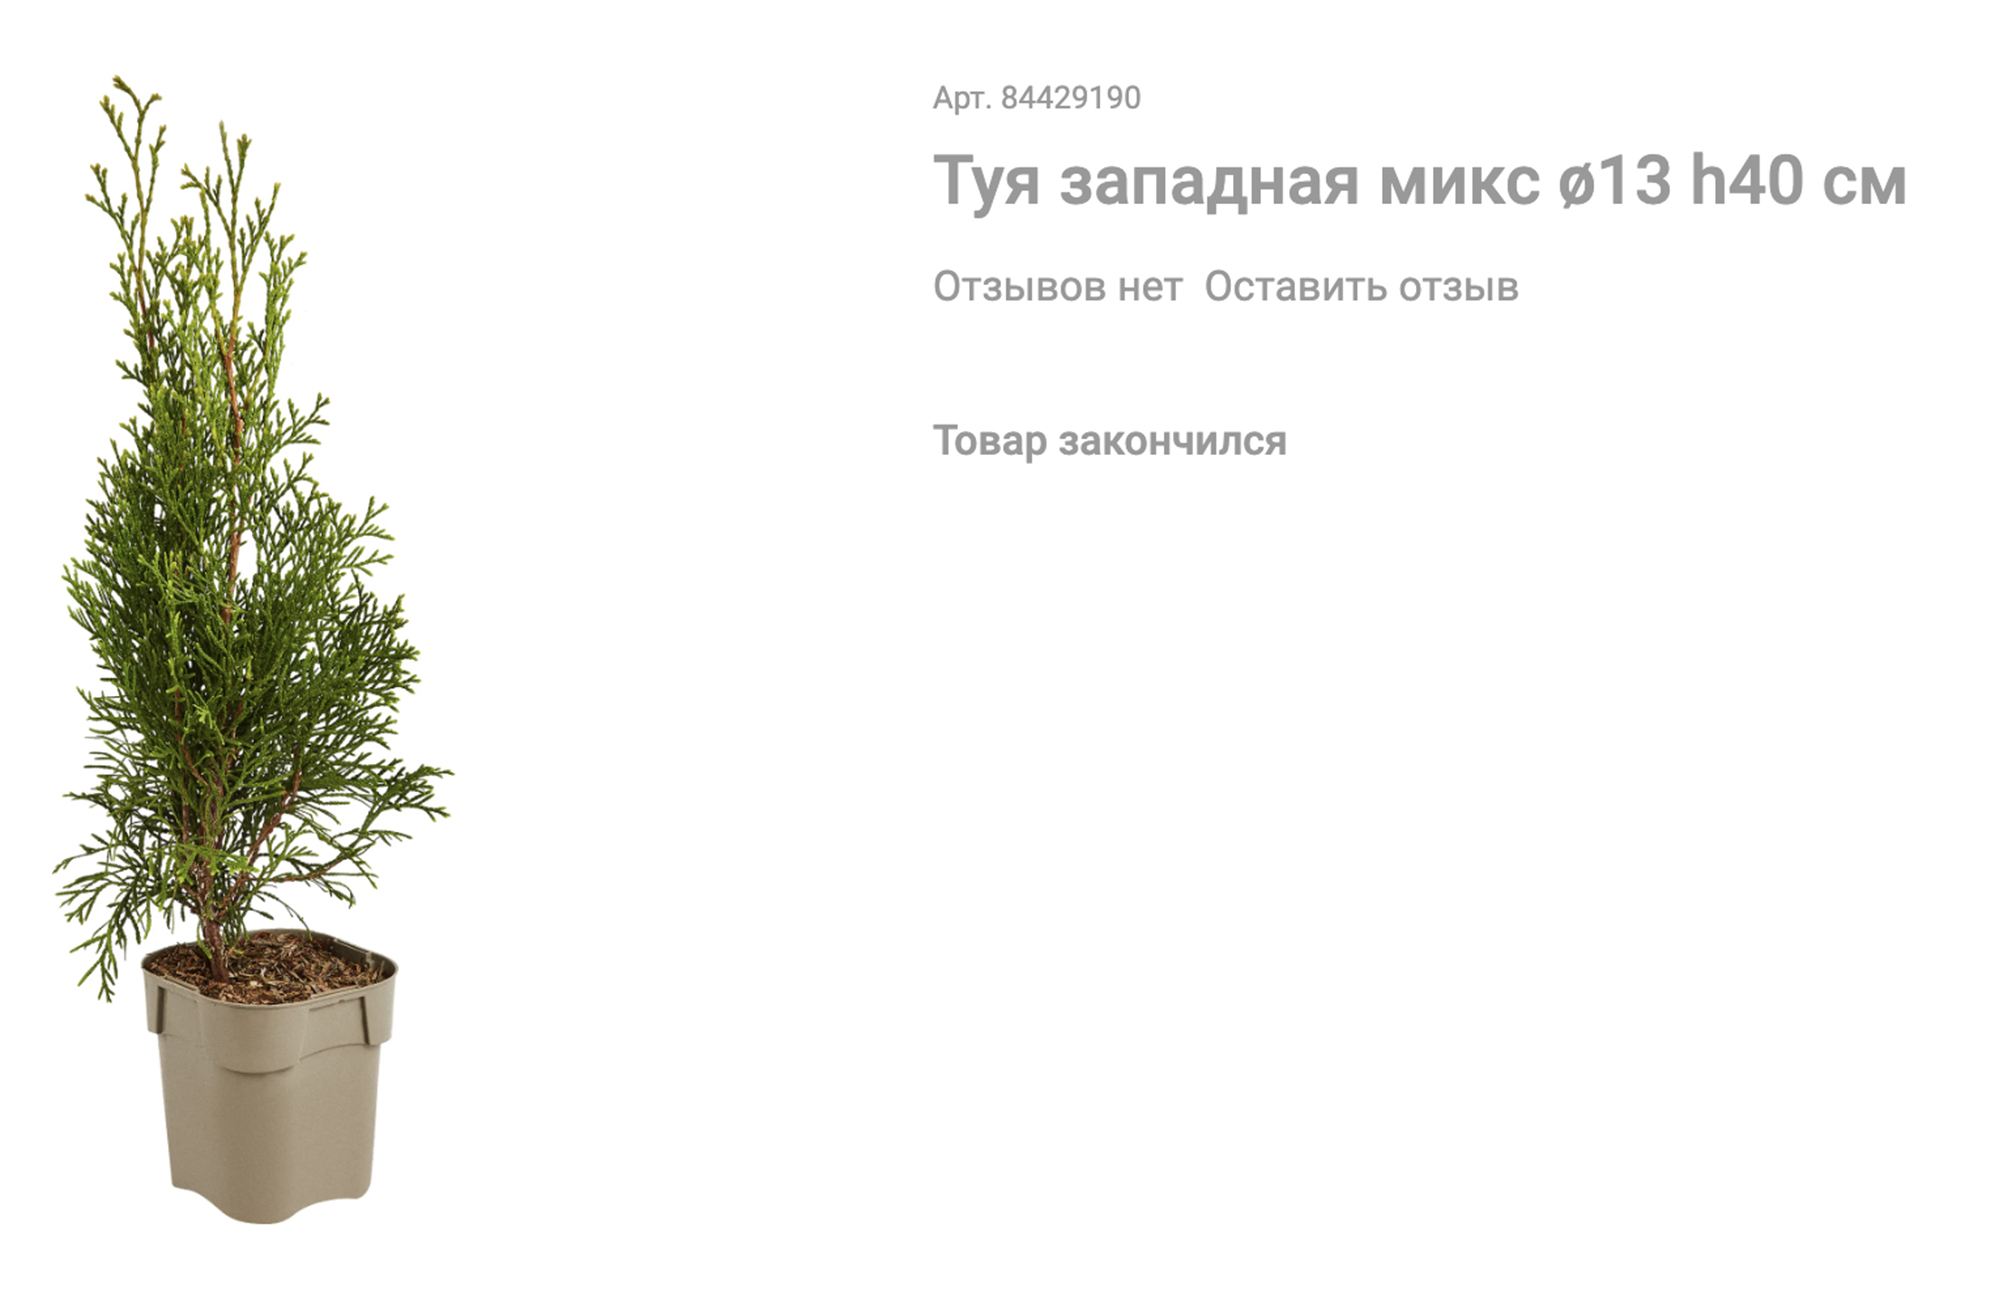 Этот саженец меньше, стоит почти в 2,5 раза дешевле, но даже неизвестен сорт. Источник: leroymerlin.ru